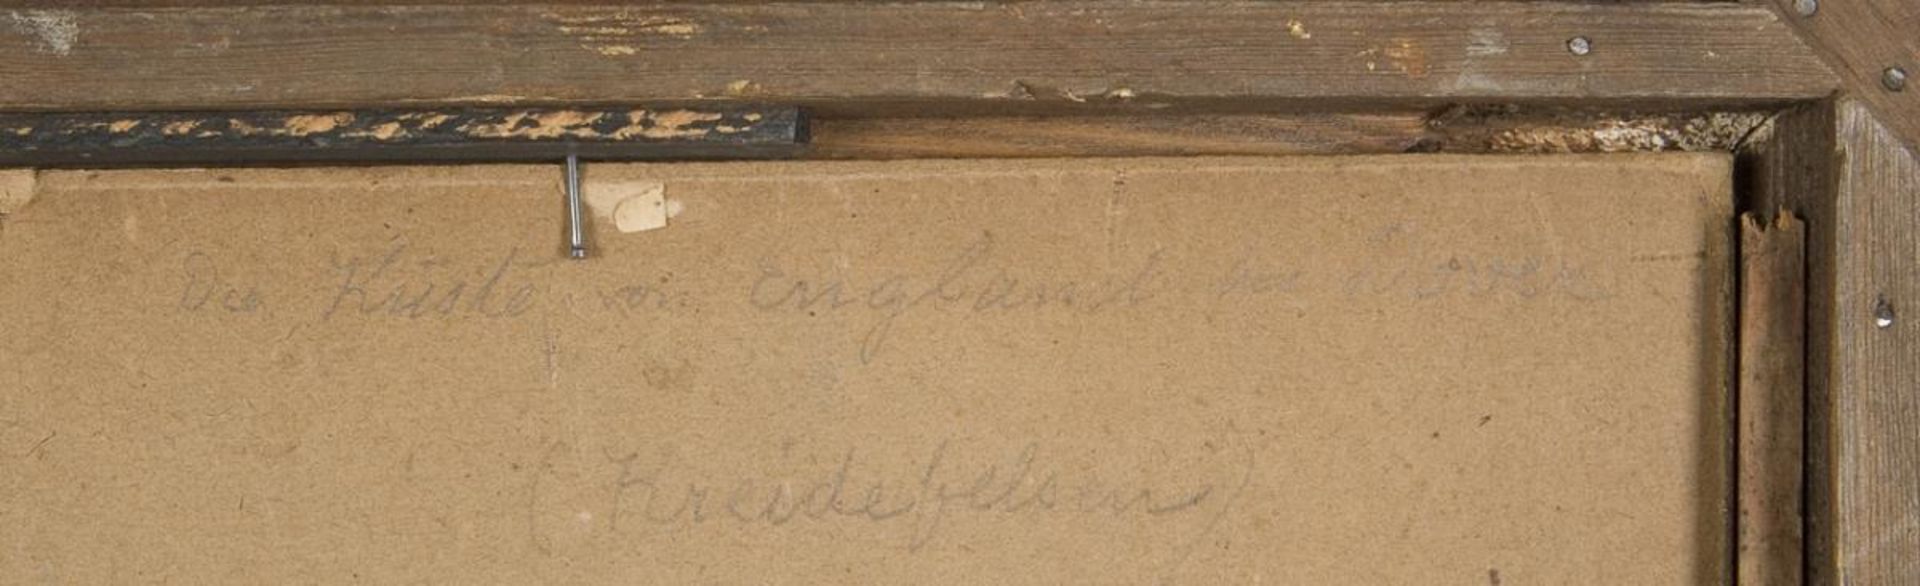 KRAEMER, Peter (1823 Zweibrücken - 1907 New York). Kreidefelsen bei Dover. - Bild 2 aus 6